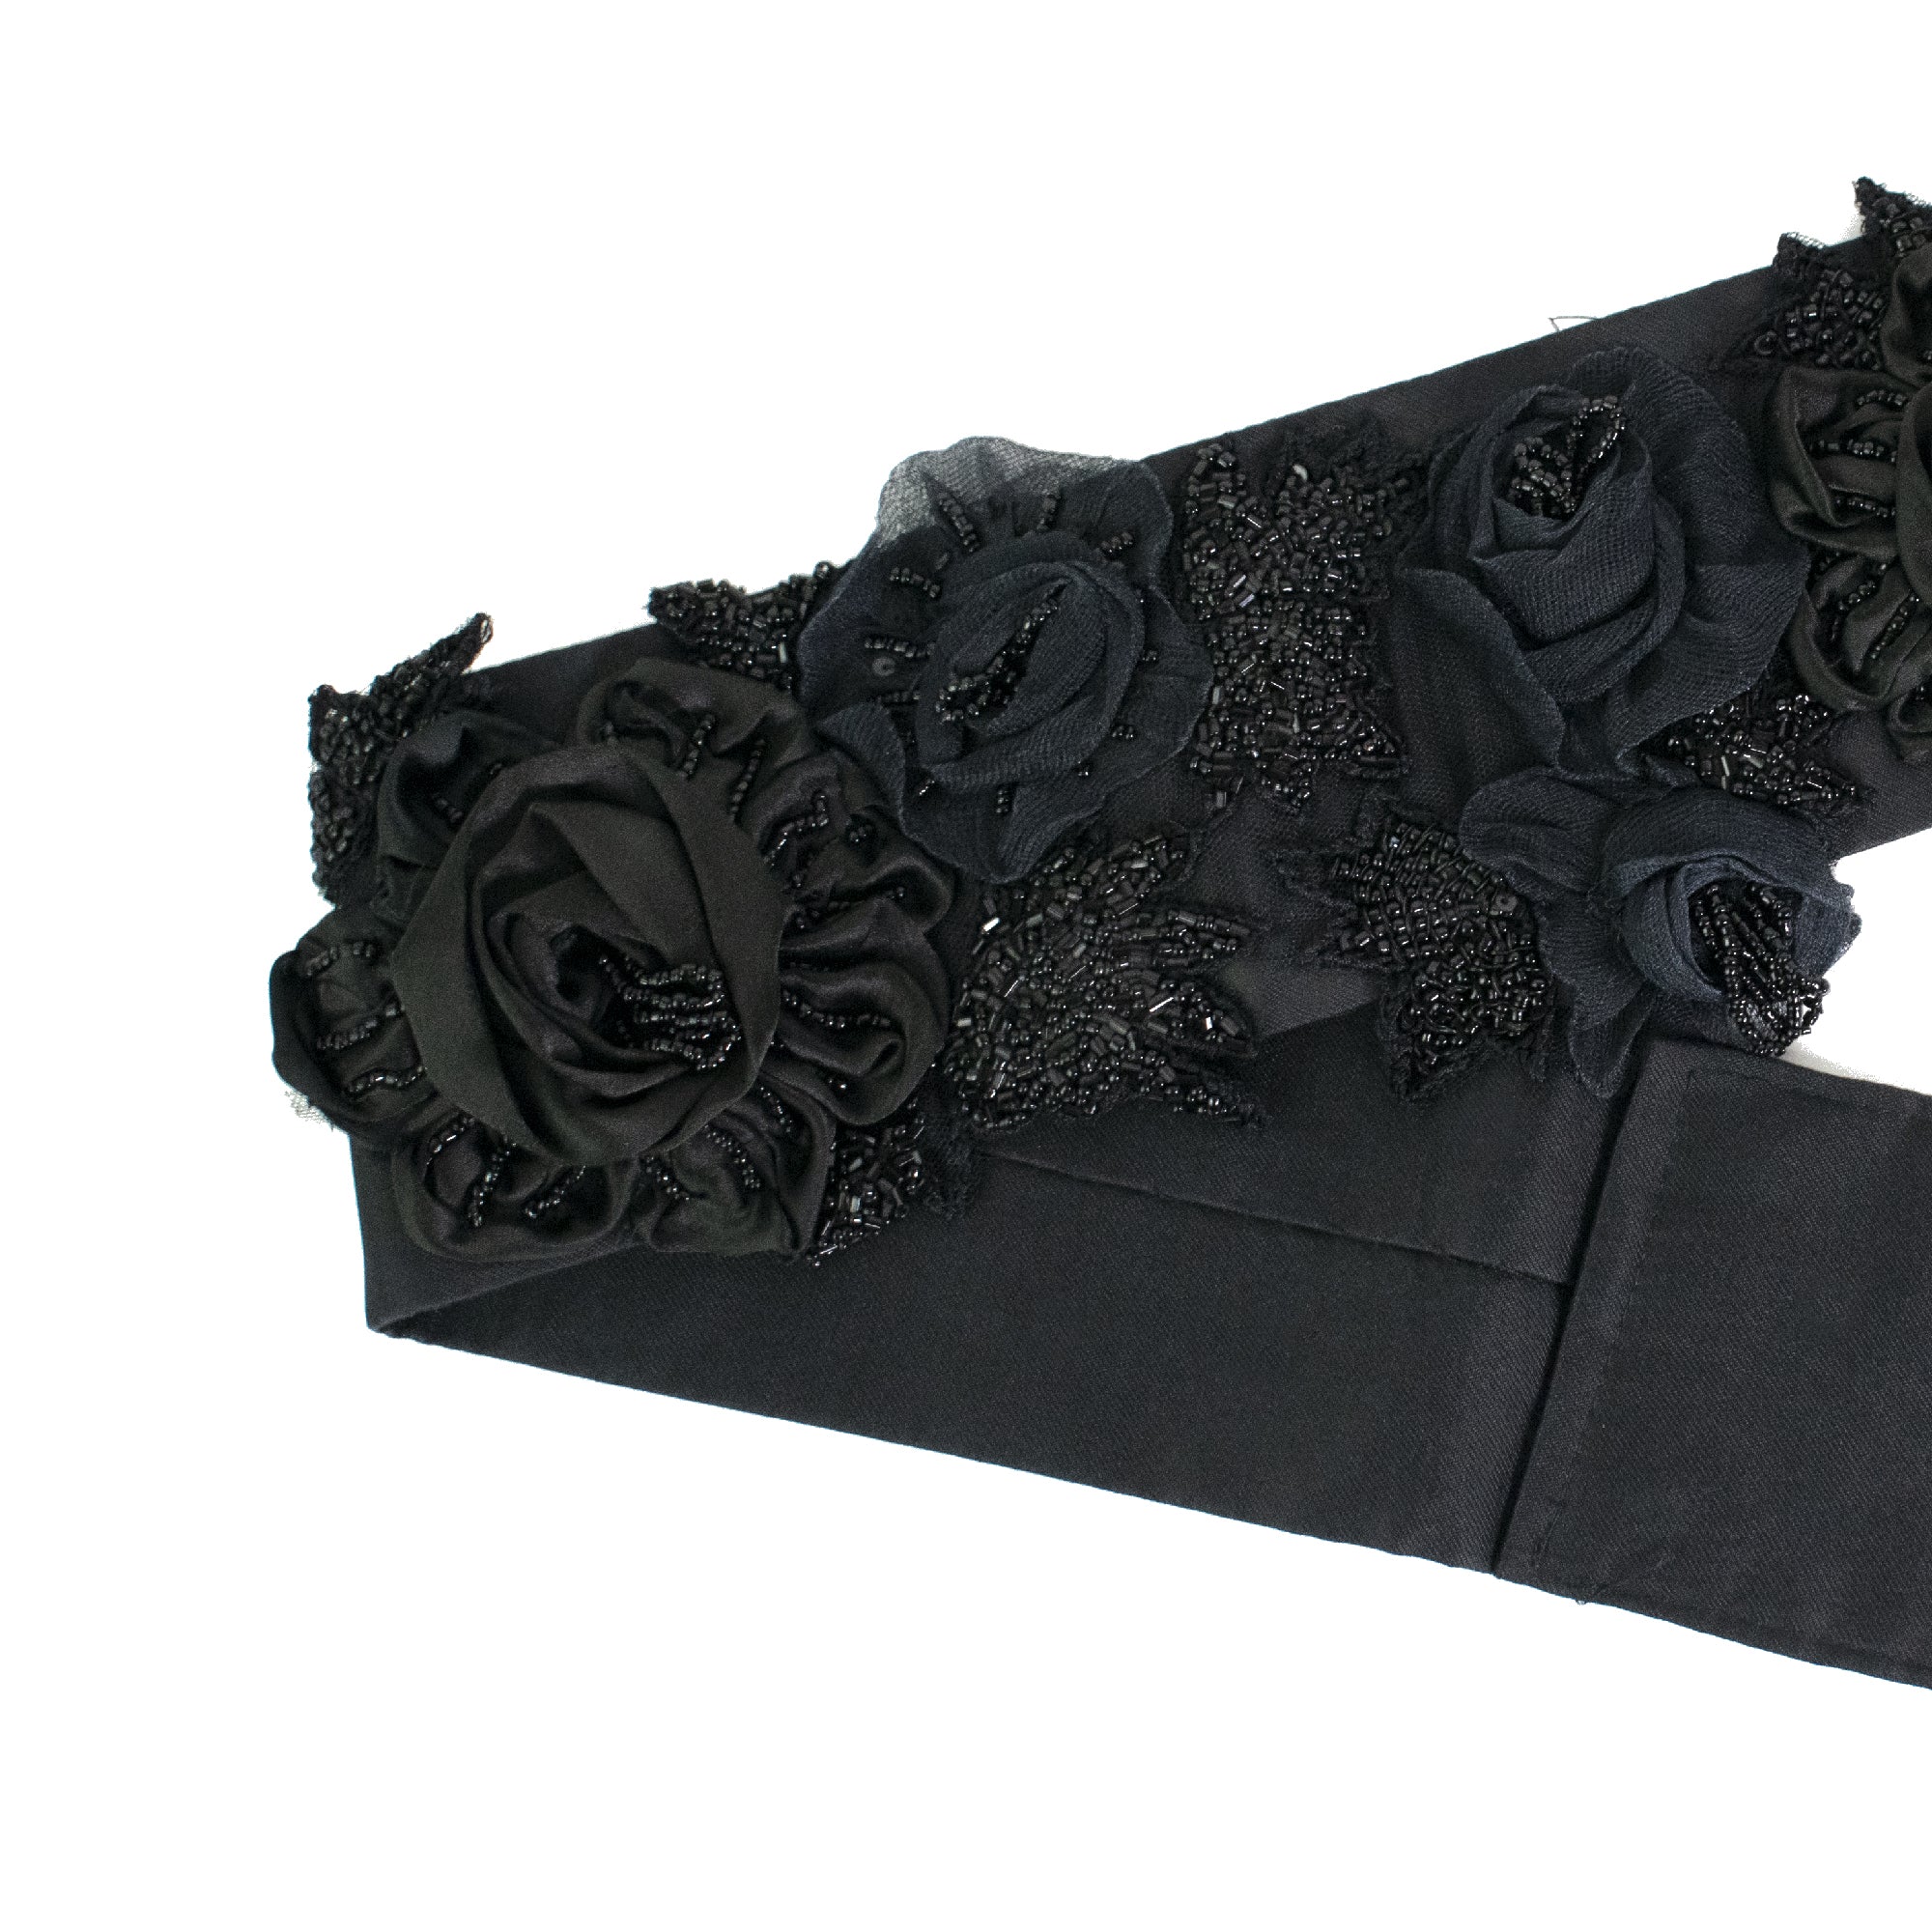 Maxi cintura nera con fiori tridimensionali